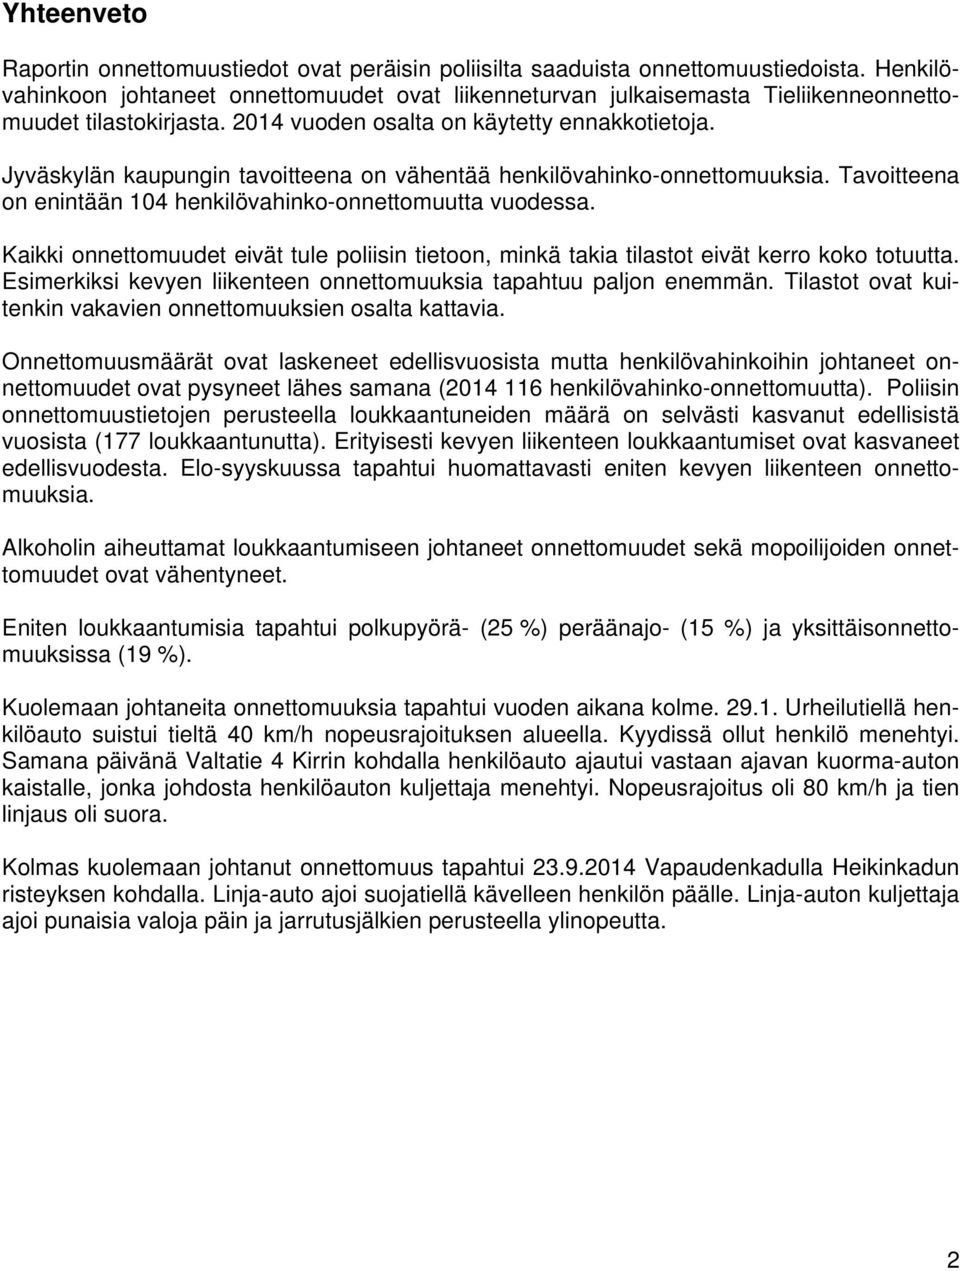 Jyväskylän kaupungin tavoitteena on vähentää henkilövahinko-onnettomuuksia. Tavoitteena on enintään 104 henkilövahinko-onnettomuutta vuodessa.